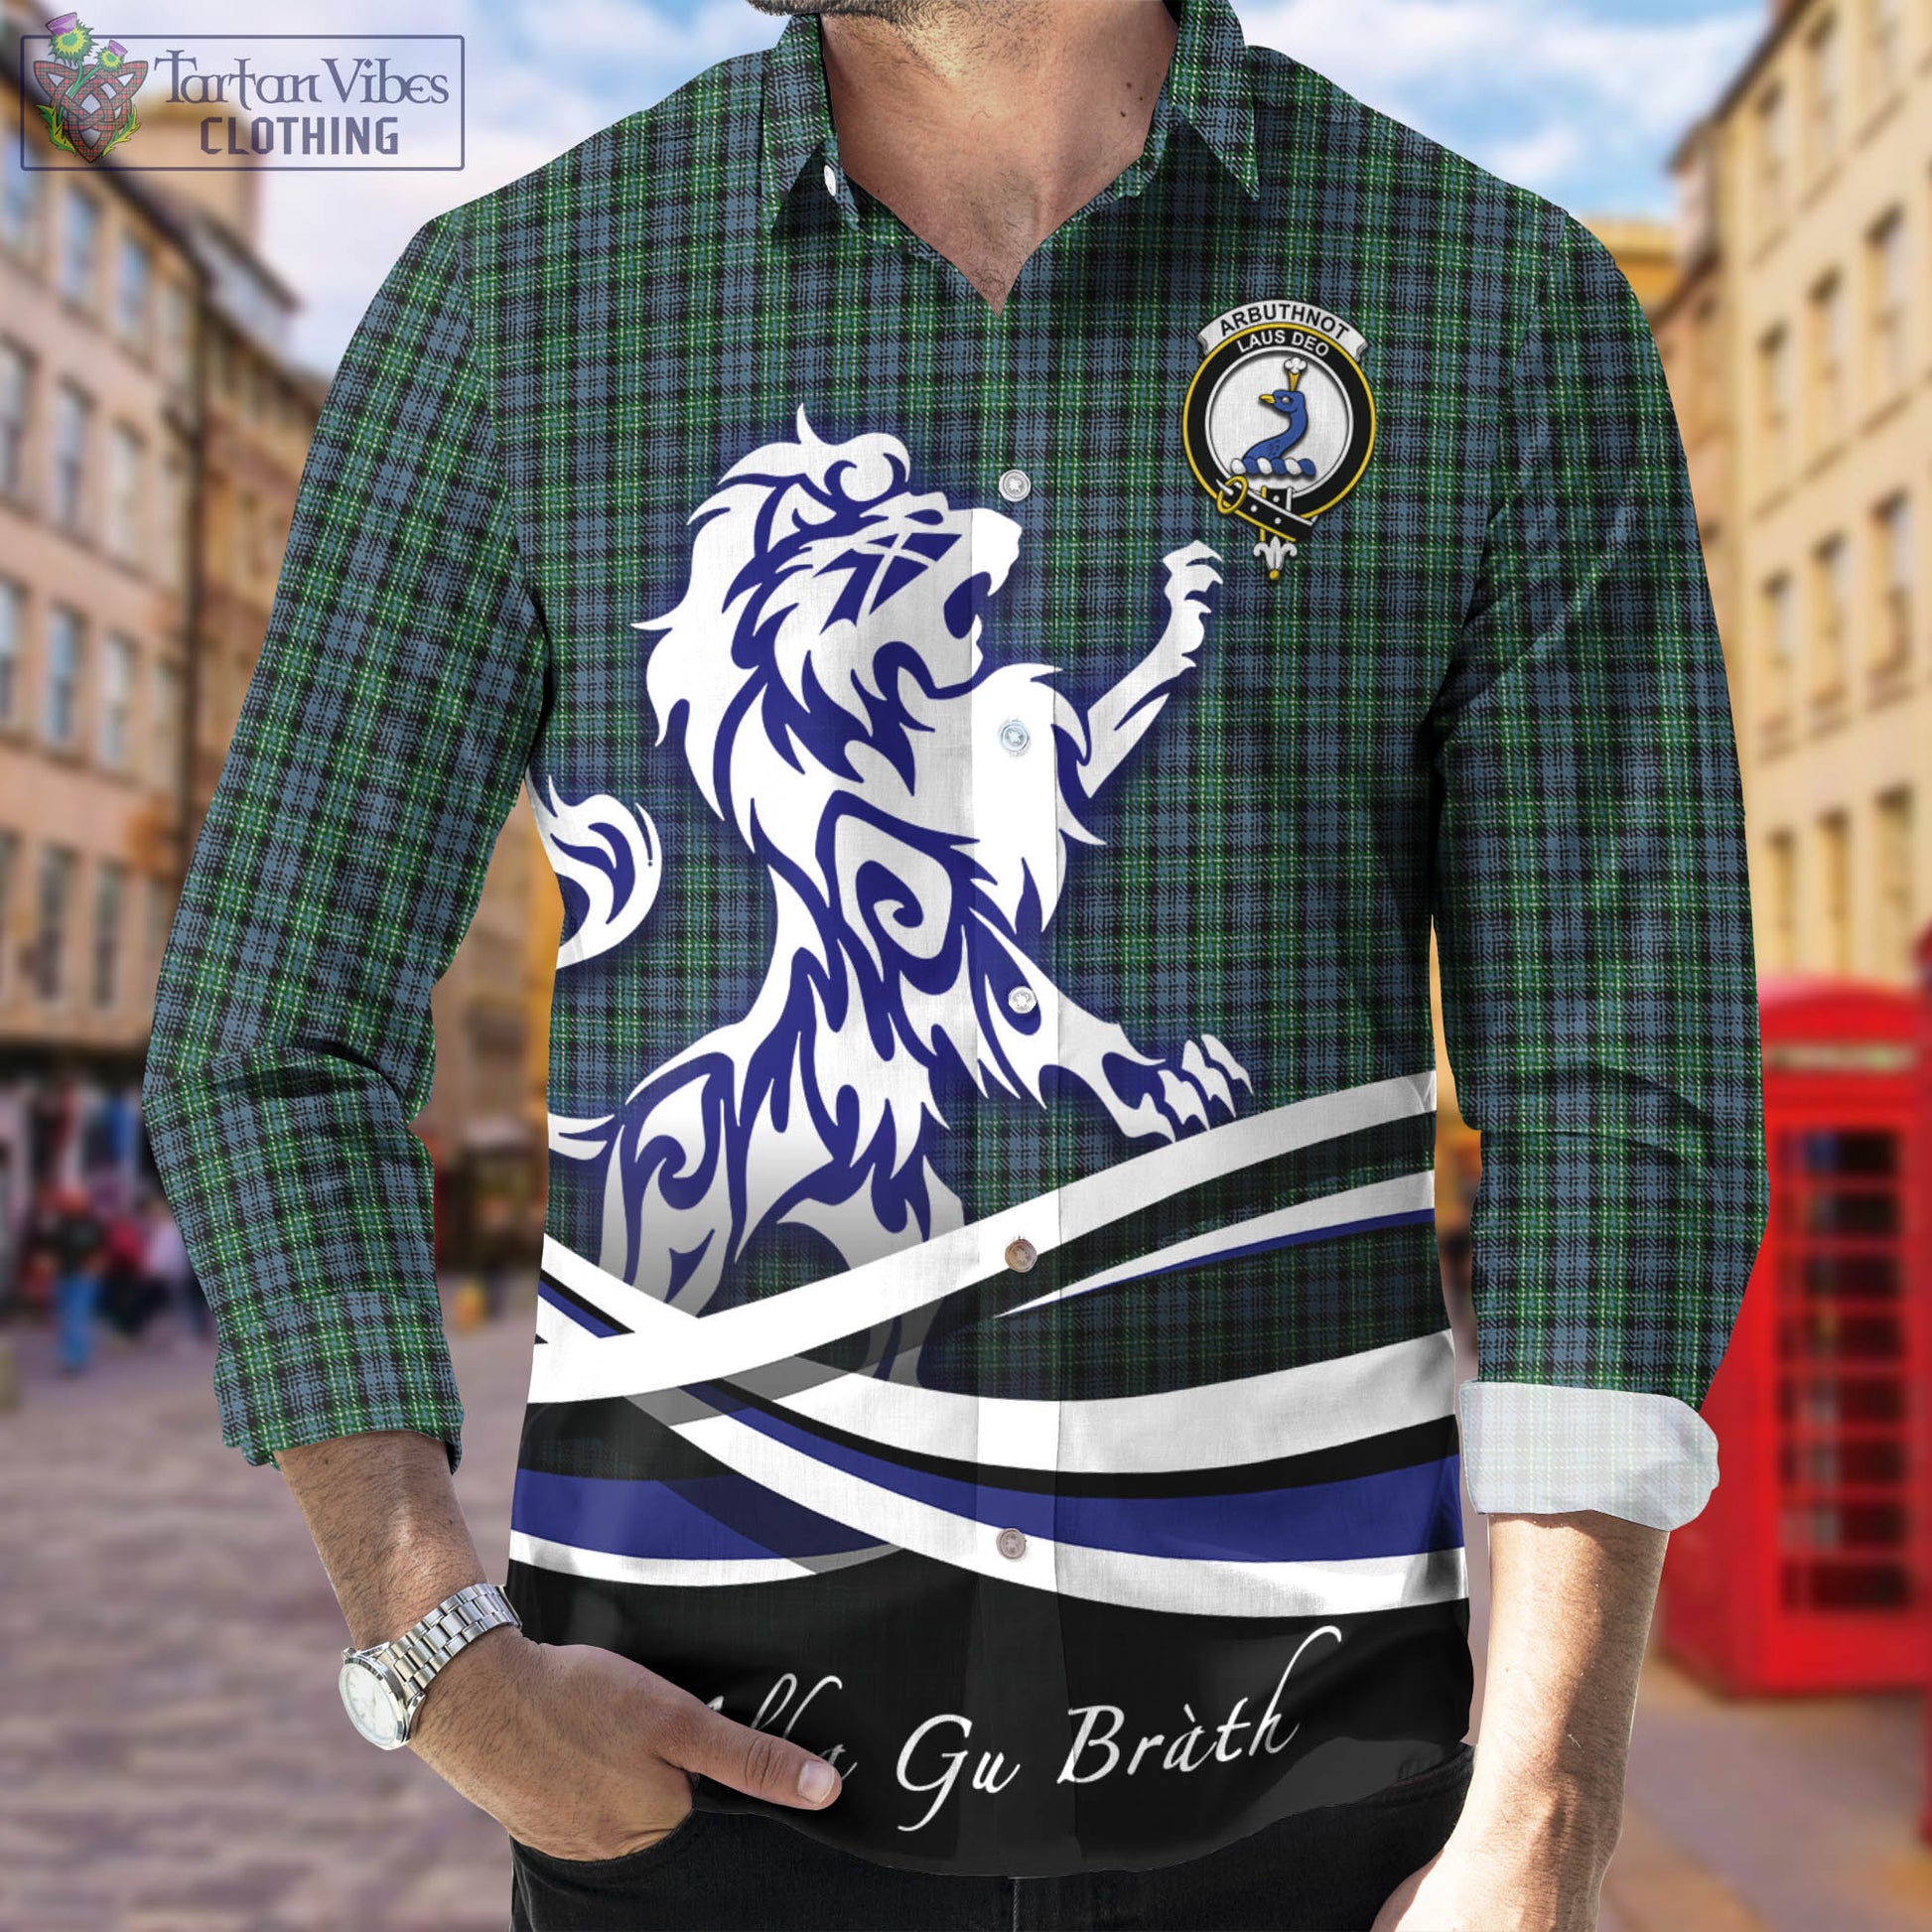 arbuthnot-tartan-long-sleeve-button-up-shirt-with-alba-gu-brath-regal-lion-emblem